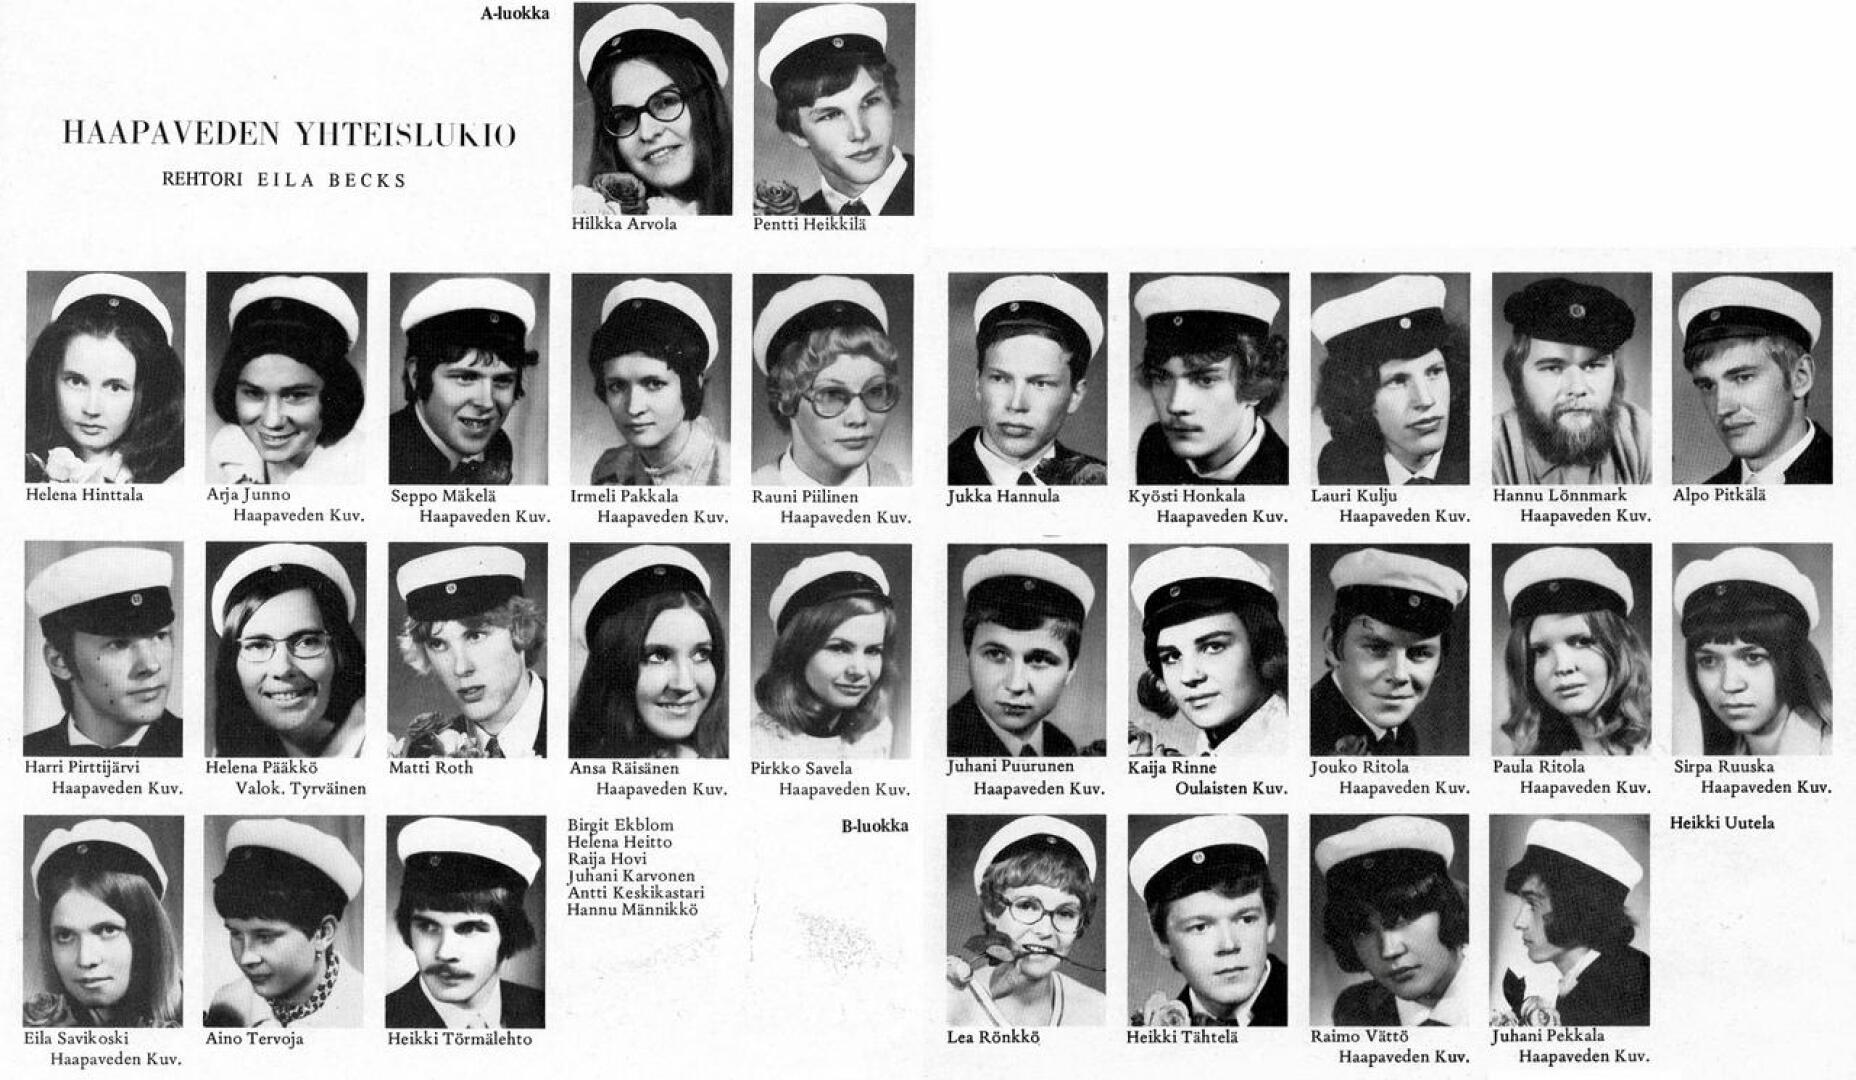 Haapaveden lukion kevään 1970 ylioppilaat Spes Patriae -kuvastossa. Ryhmäkuvaa ei silloin tiettävästi ole otettu. Tänä vuonna Haapavedellä otetaan ryhmäkuva, mutta aiempia vuosia väljemmin seisovasta joukosta ylioppilaita.